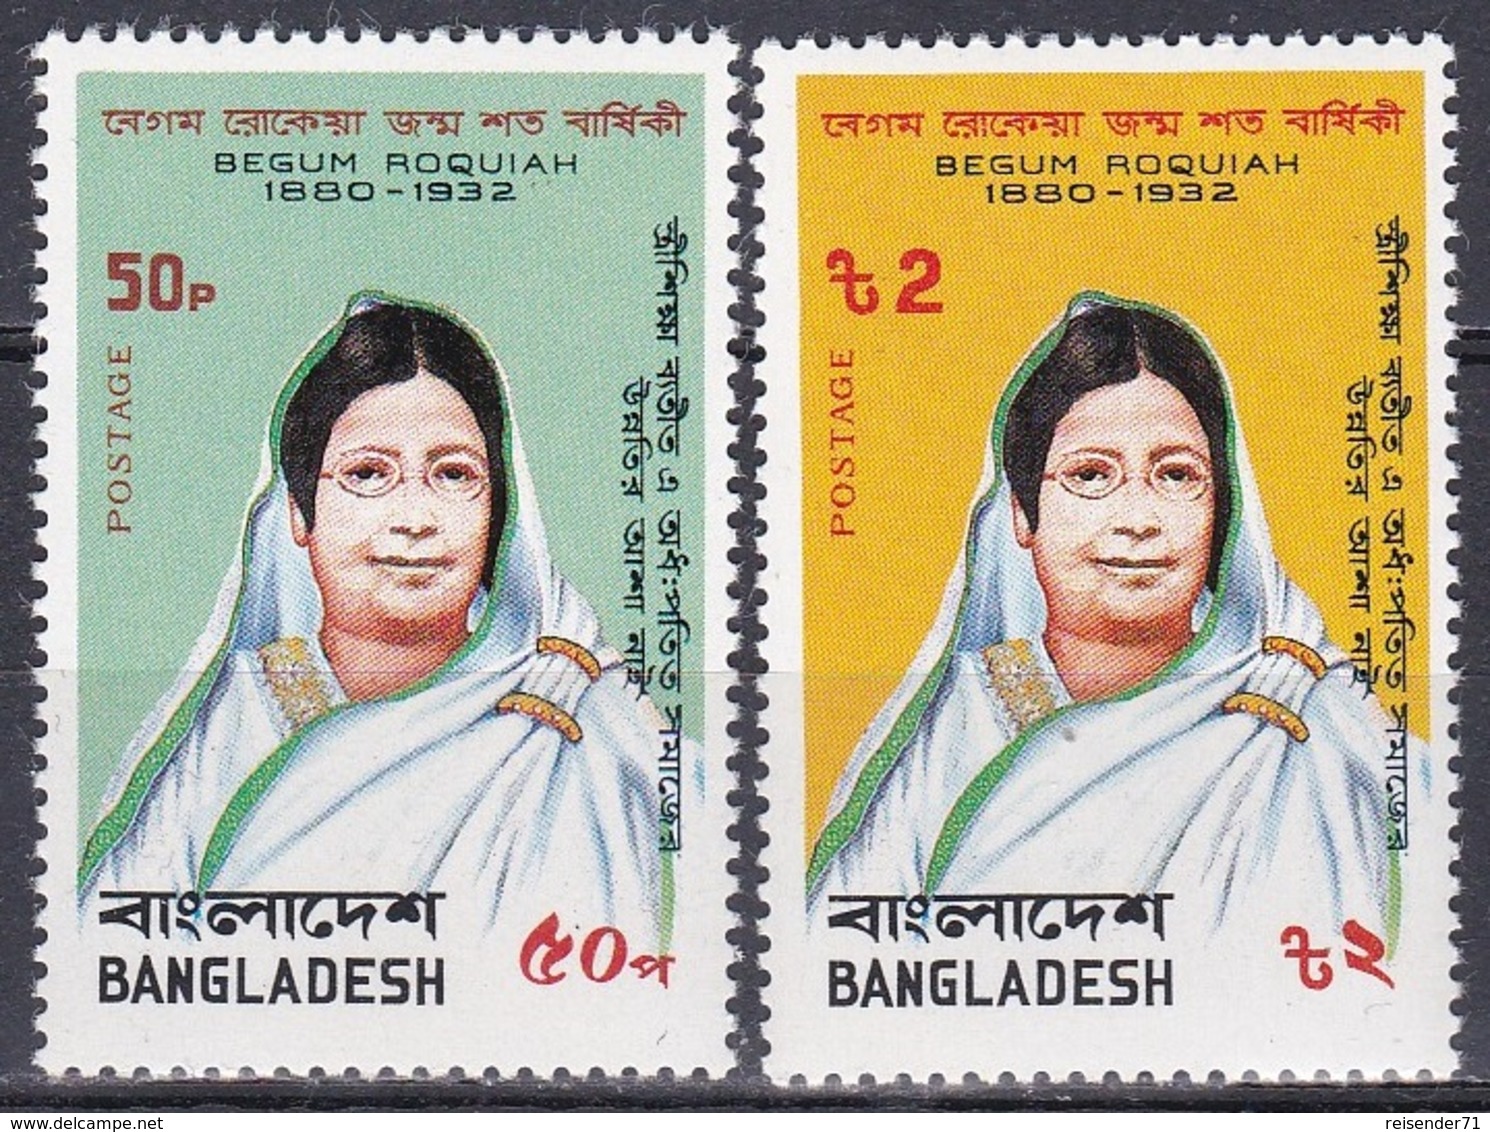 Bangladesch Bangladesh 1980 Persönlichkeiten Frauen Women Emanzipation Emancipation Begum Roquiah, Mi. 142-3 ** - Bangladesch